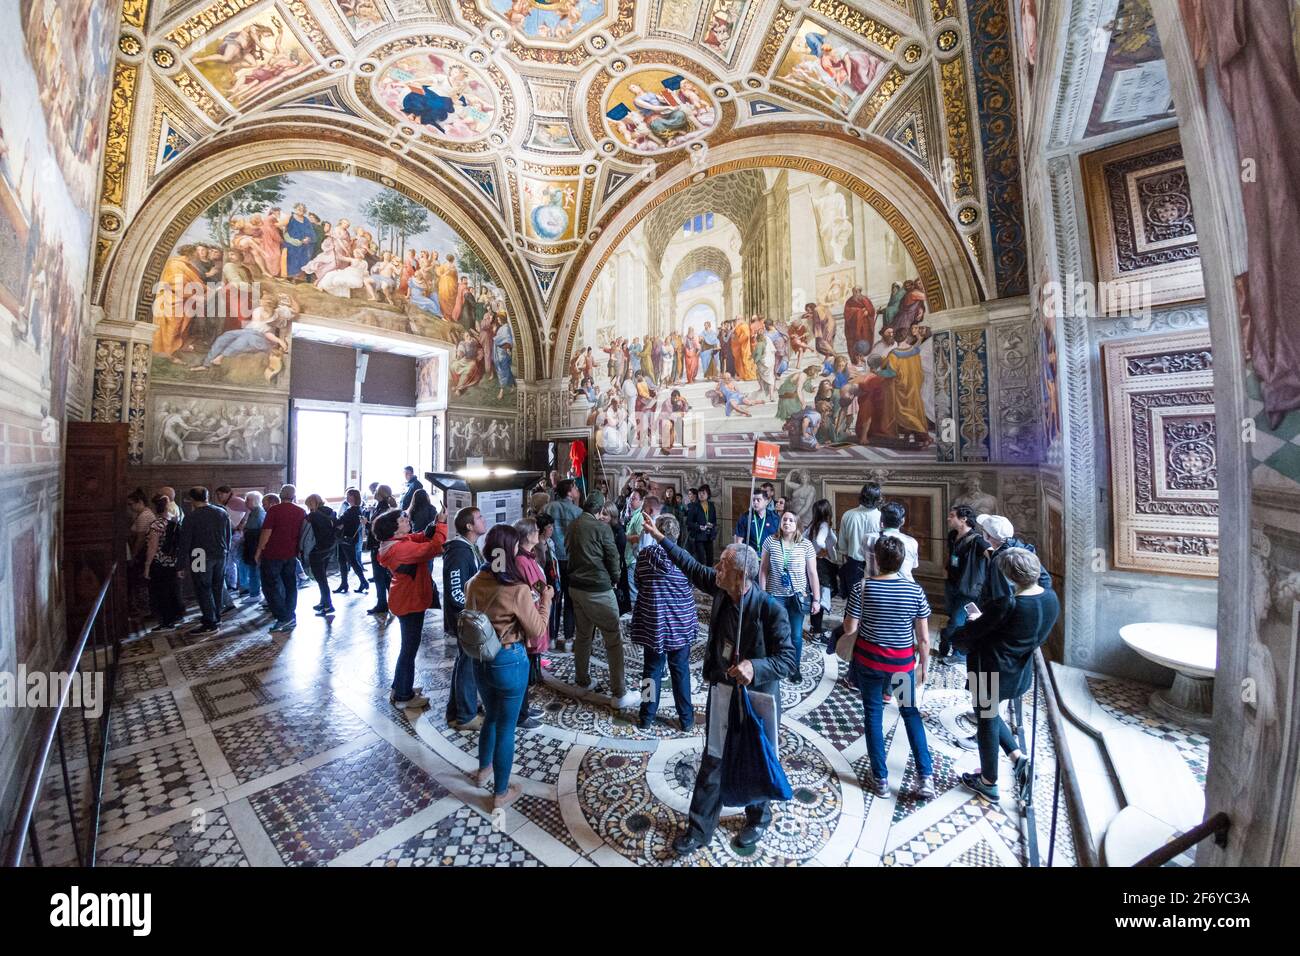 Vatican - 06 octobre 2018: Les touristes aiment peindre dans les strophes de Raphaël, quatre chambres émergeant avec les fresques remarquables peintes par Raphaël Banque D'Images